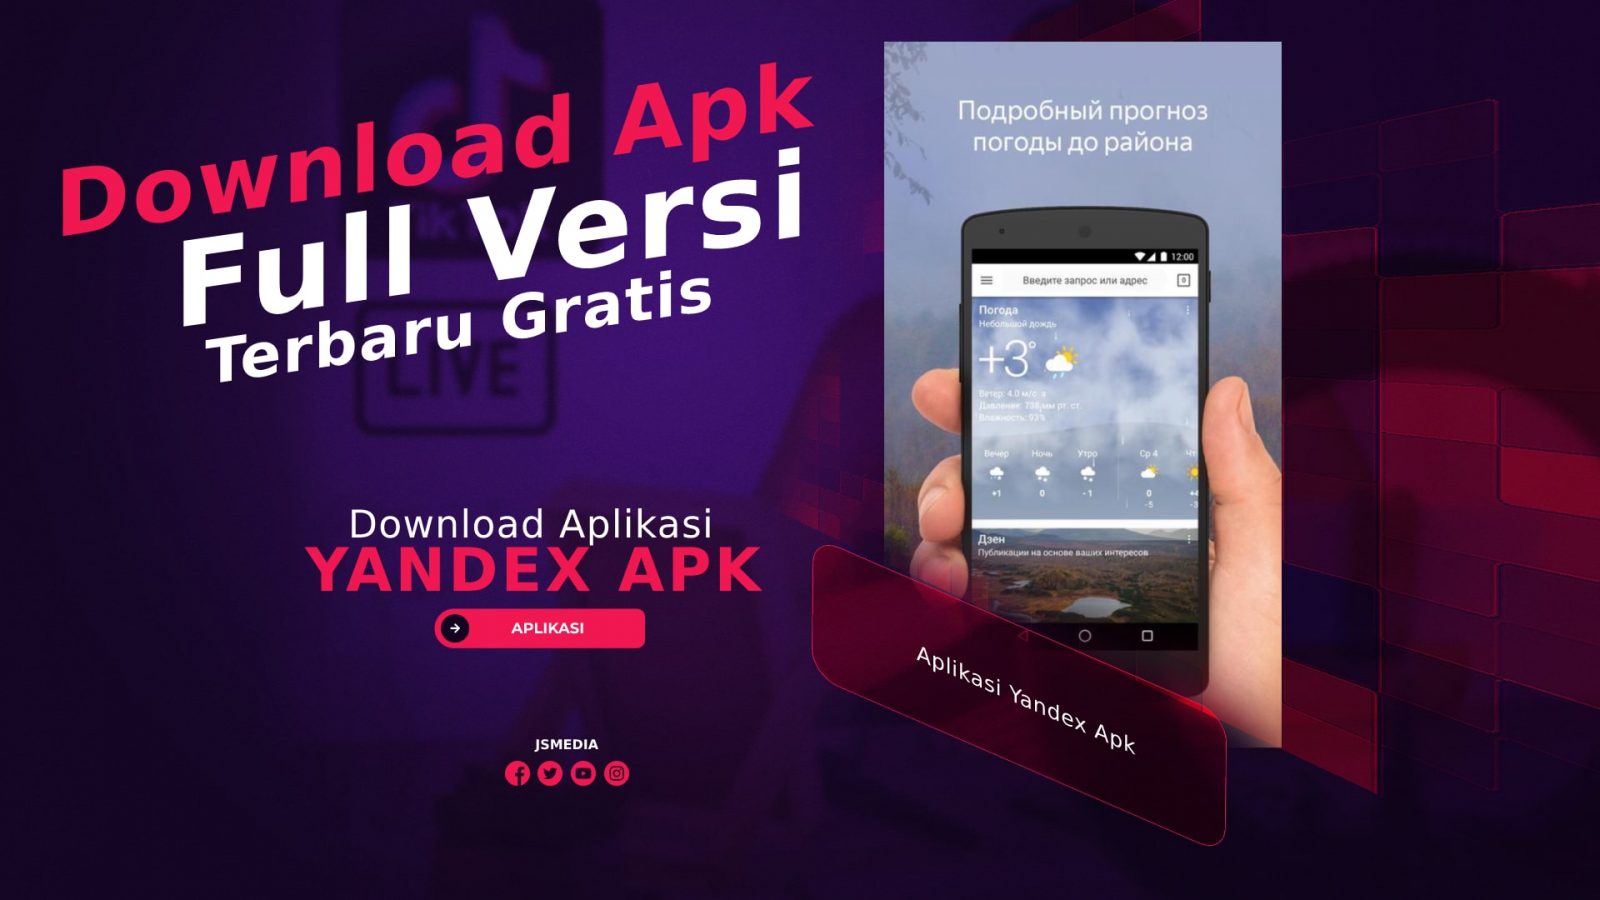 Download Aplikasi Yandex Apk Full Versi Terbaru Gratis 